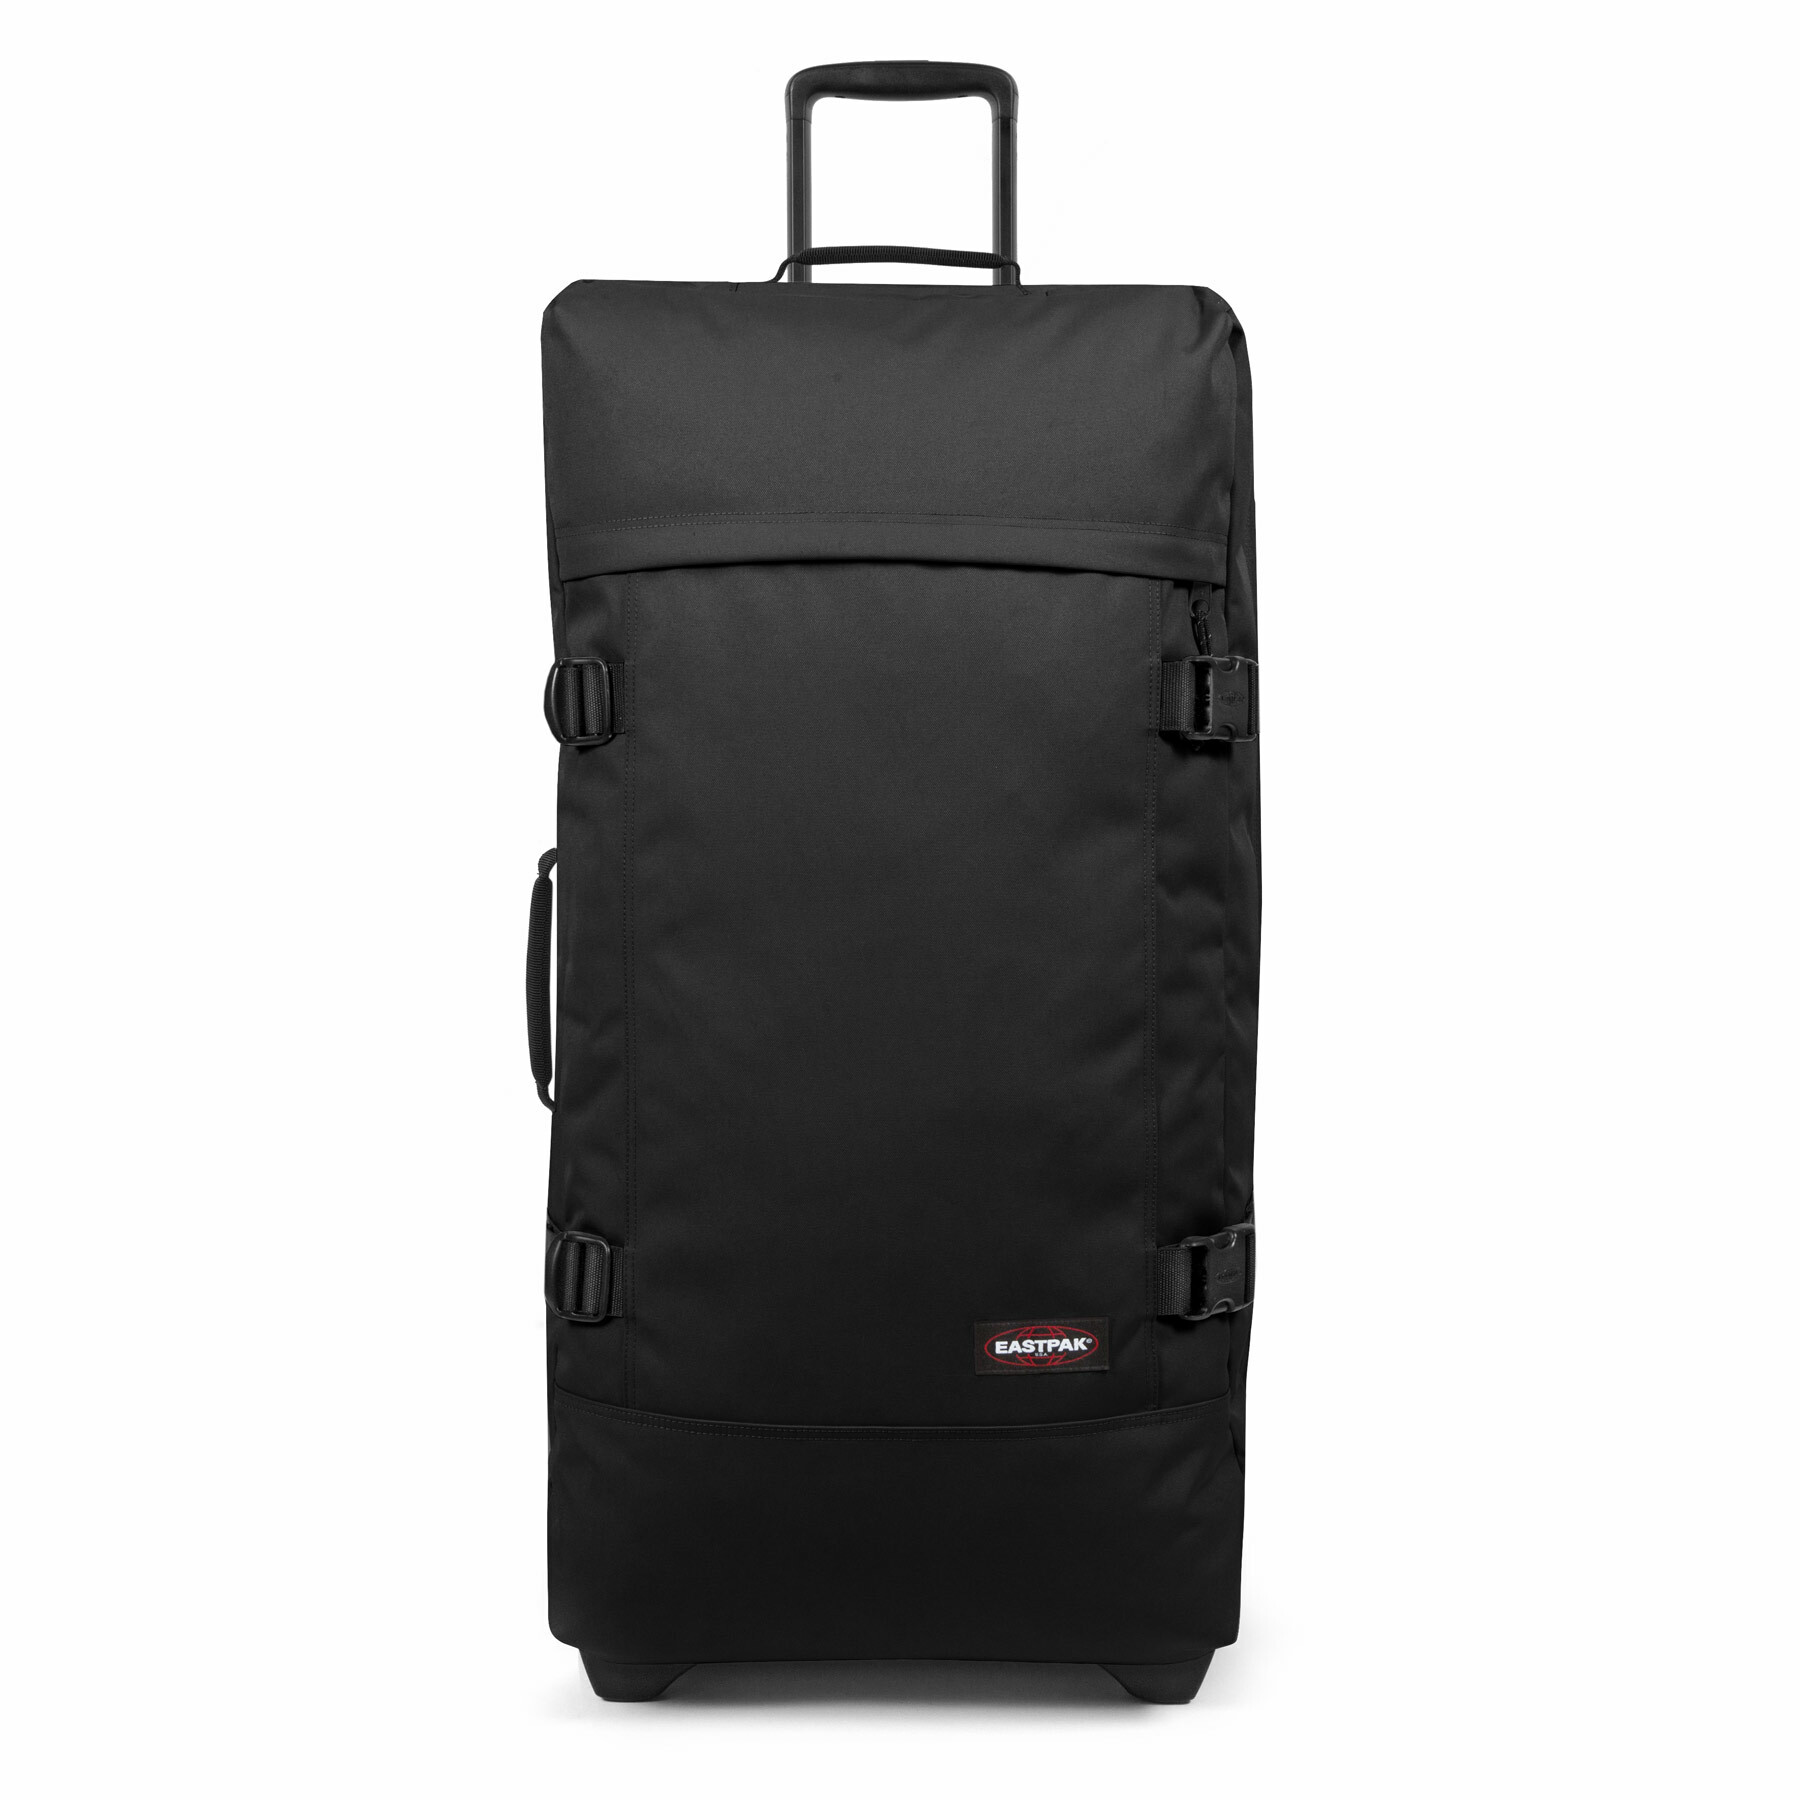 Eastpak Tasche / Wheeled Luggage Tranverz Black-121 L